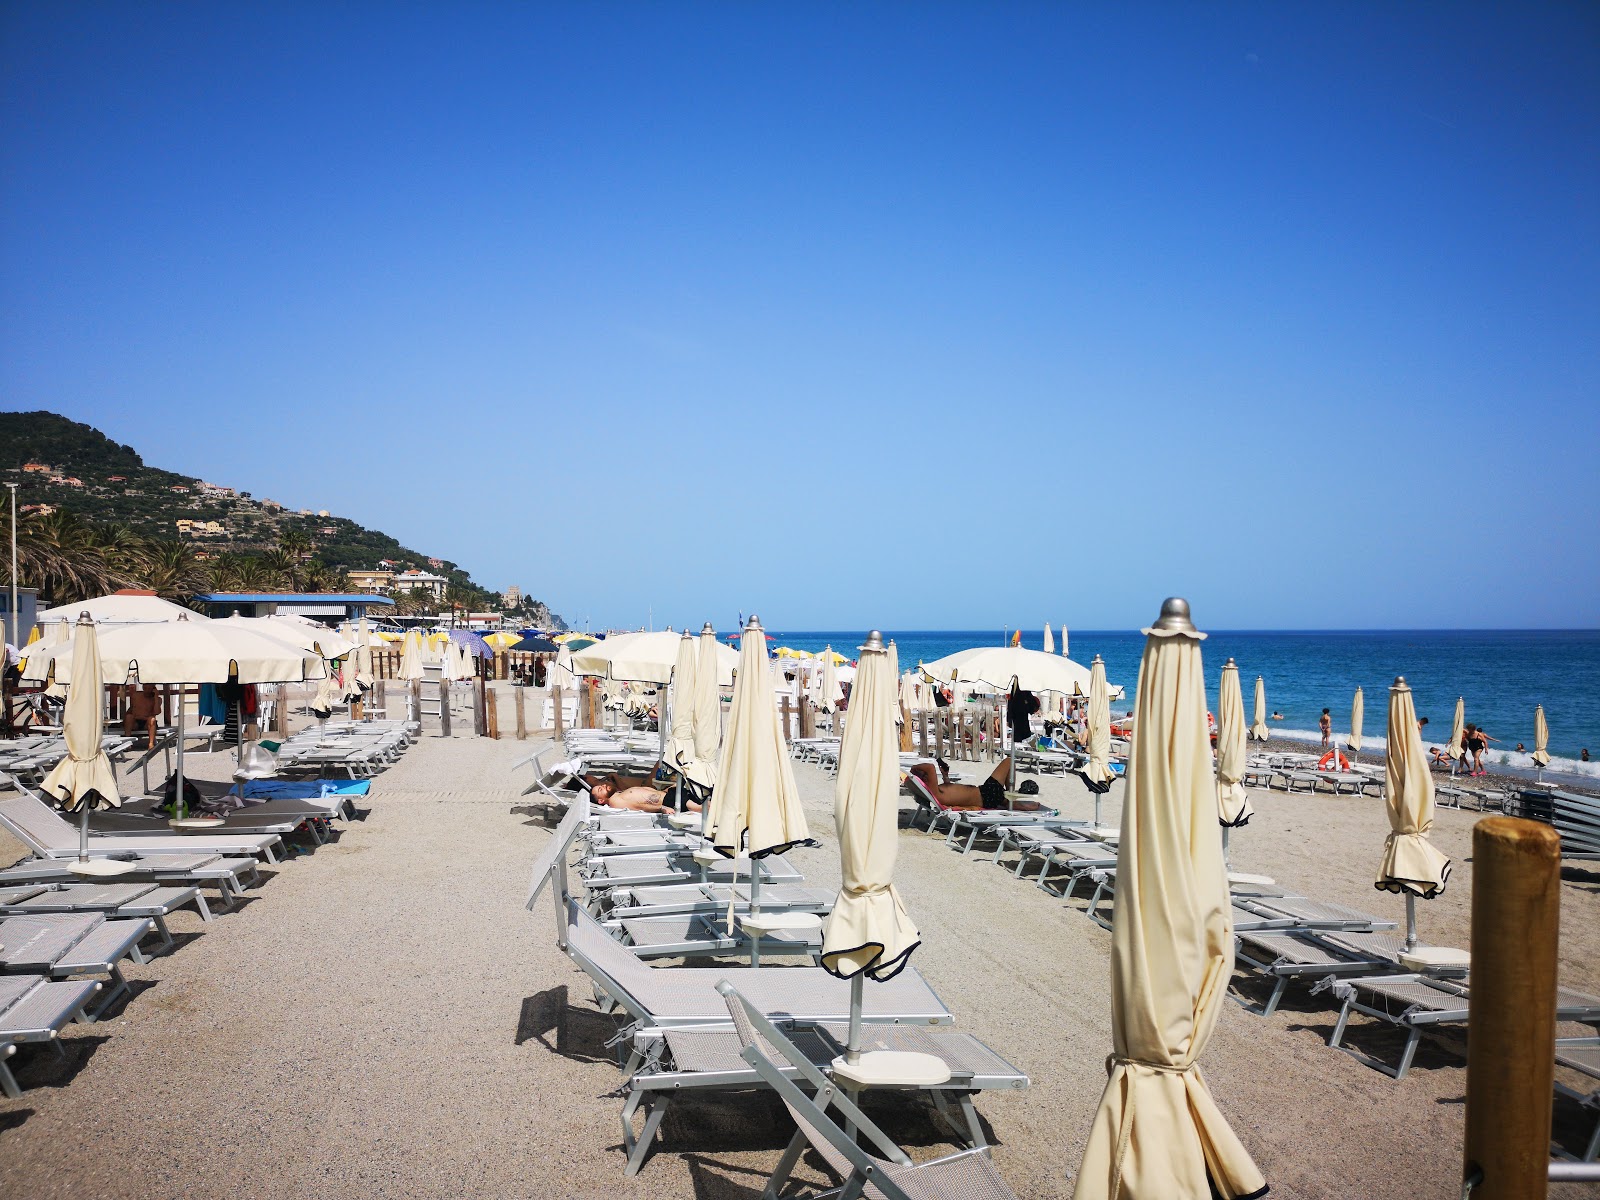 Fotografija Spiaggia libera Attrezzata priljubljeno mesto med poznavalci sprostitve